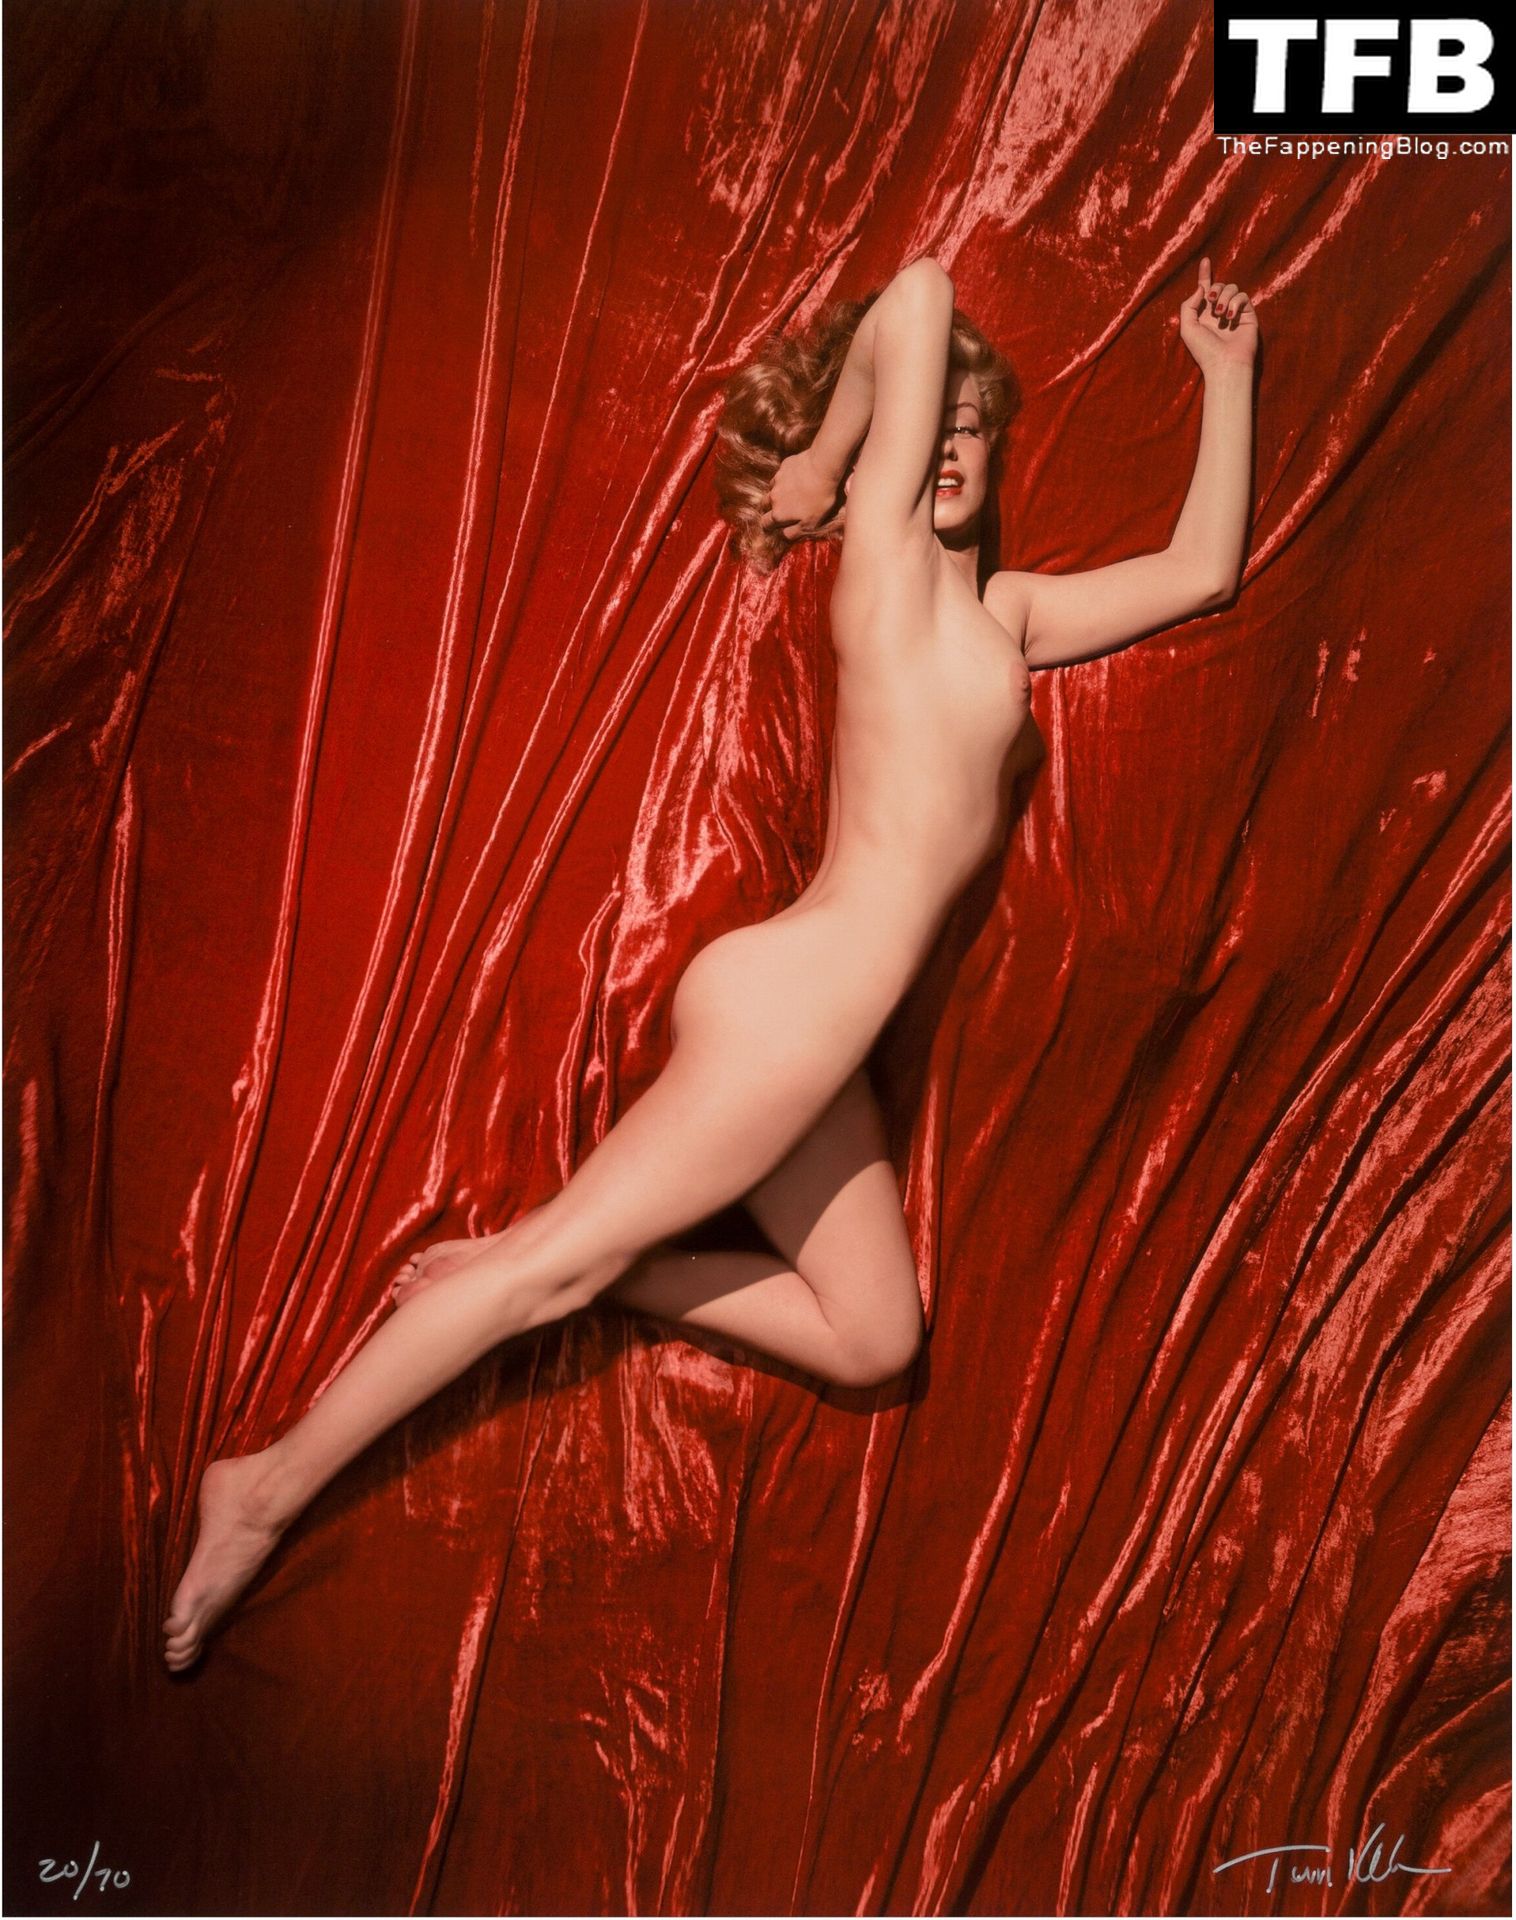 Marilyn-Monroe-Nude-The-Fappening-Blog-8.jpg